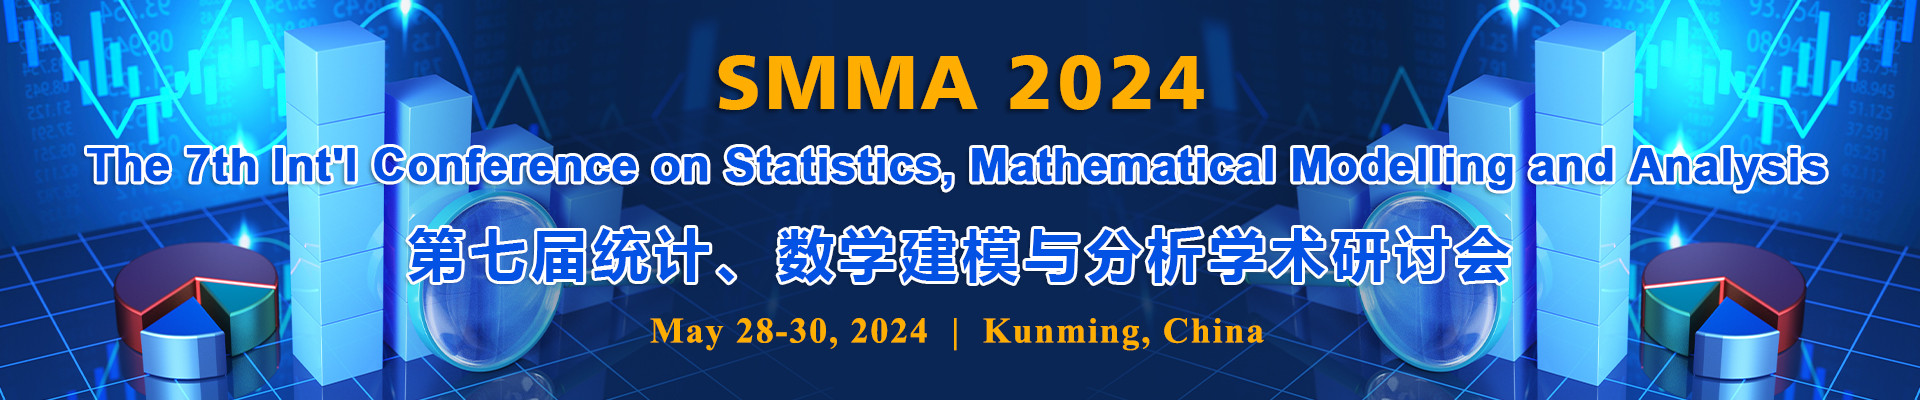 第七屆統計、數學建模與分析學術研討會(SMMA 2024)